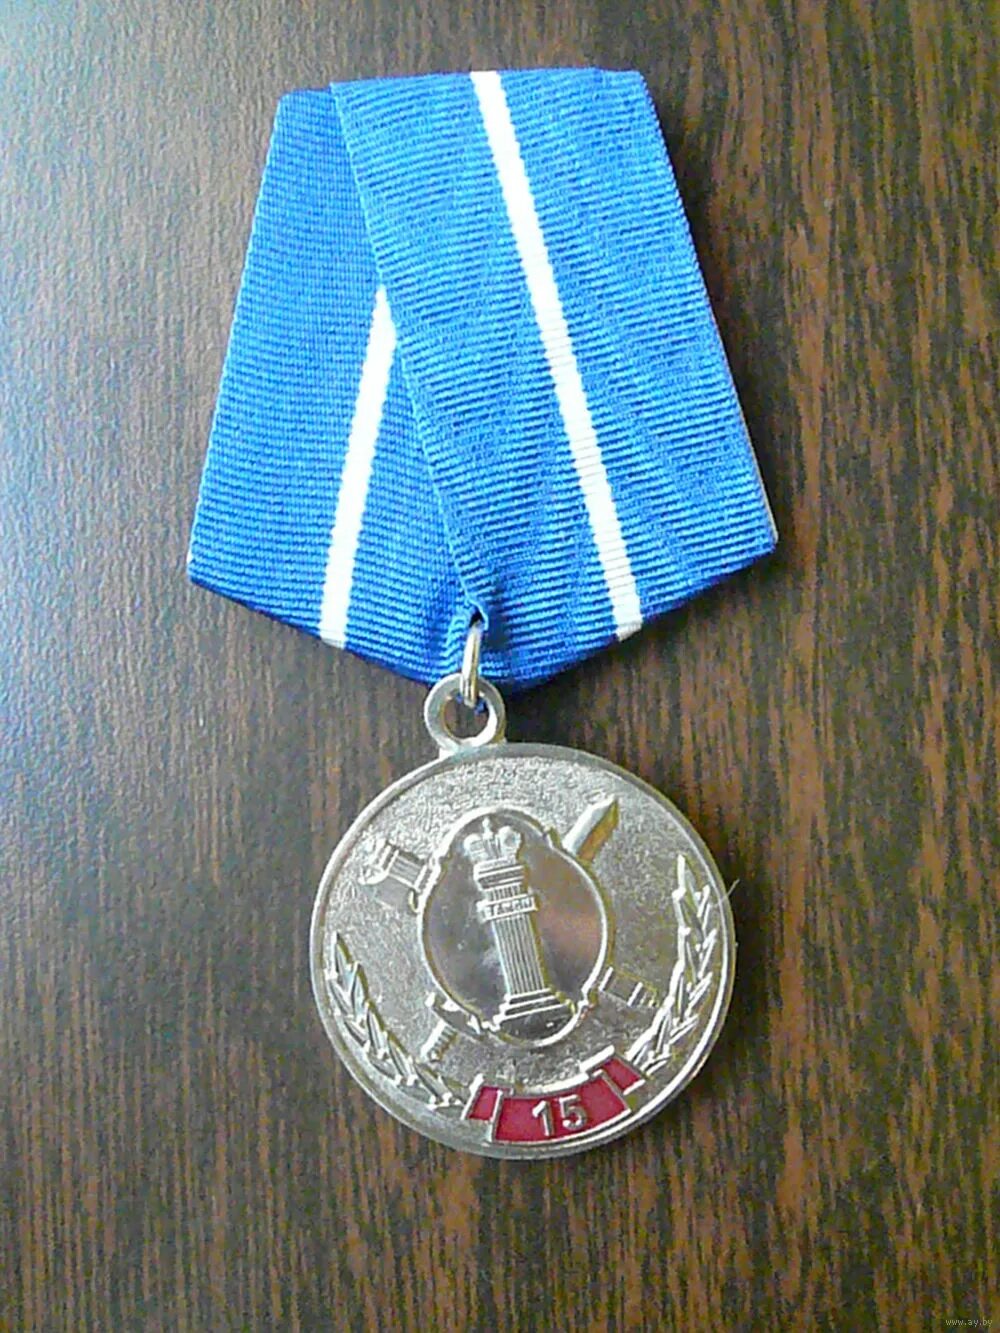 Медаль за выслугу фсин. Юбилейные медали ФСИН. Медаль ФСИН 2 степени. Медаль 15 лет УИС. Медаль ФСИН службы охраны.